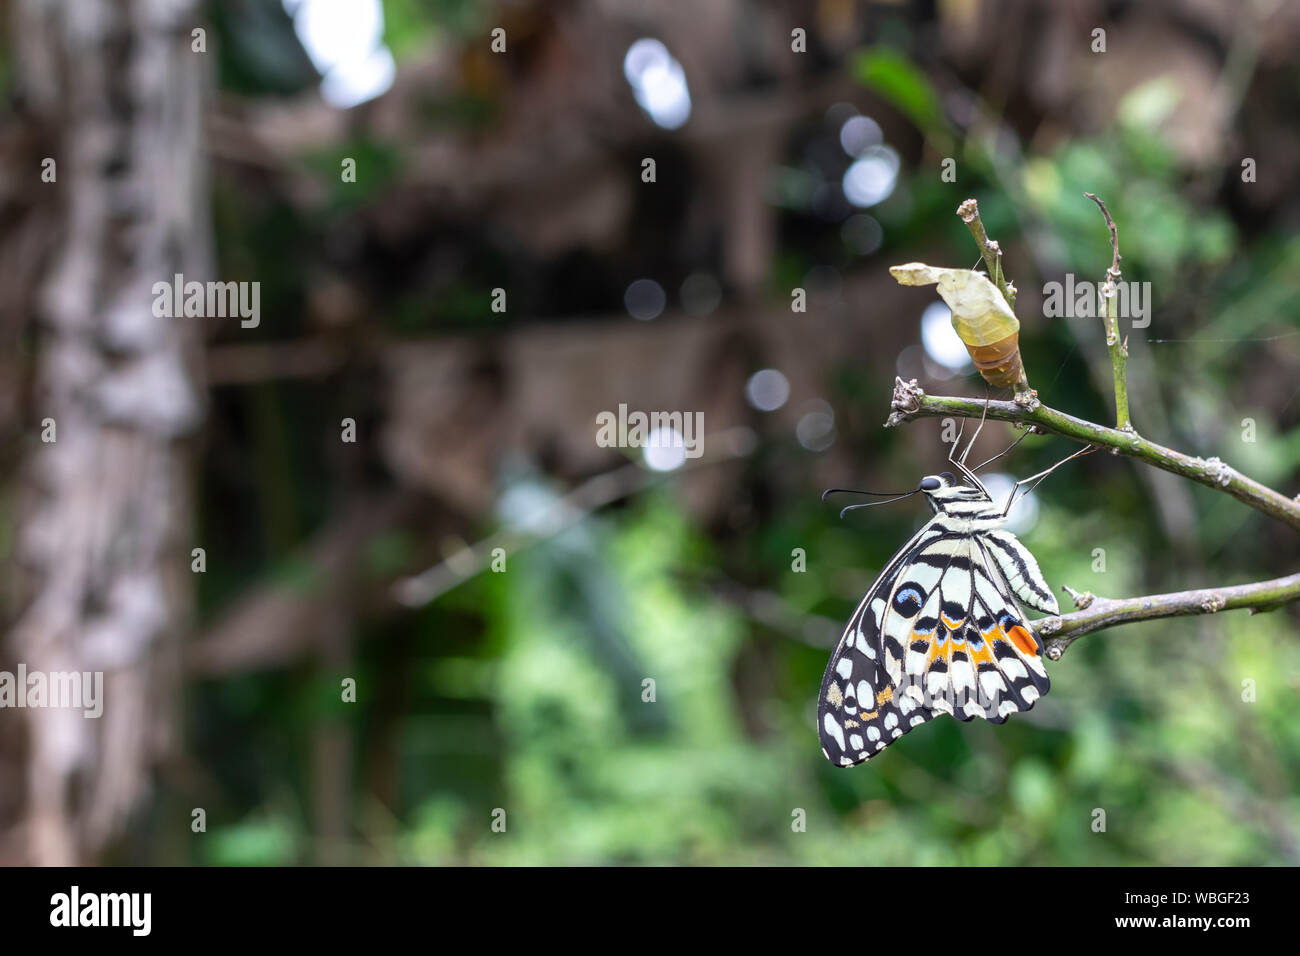 Bella di lime o di limone butterfly lasciando il suo bozzolo nella natura. Foto Stock